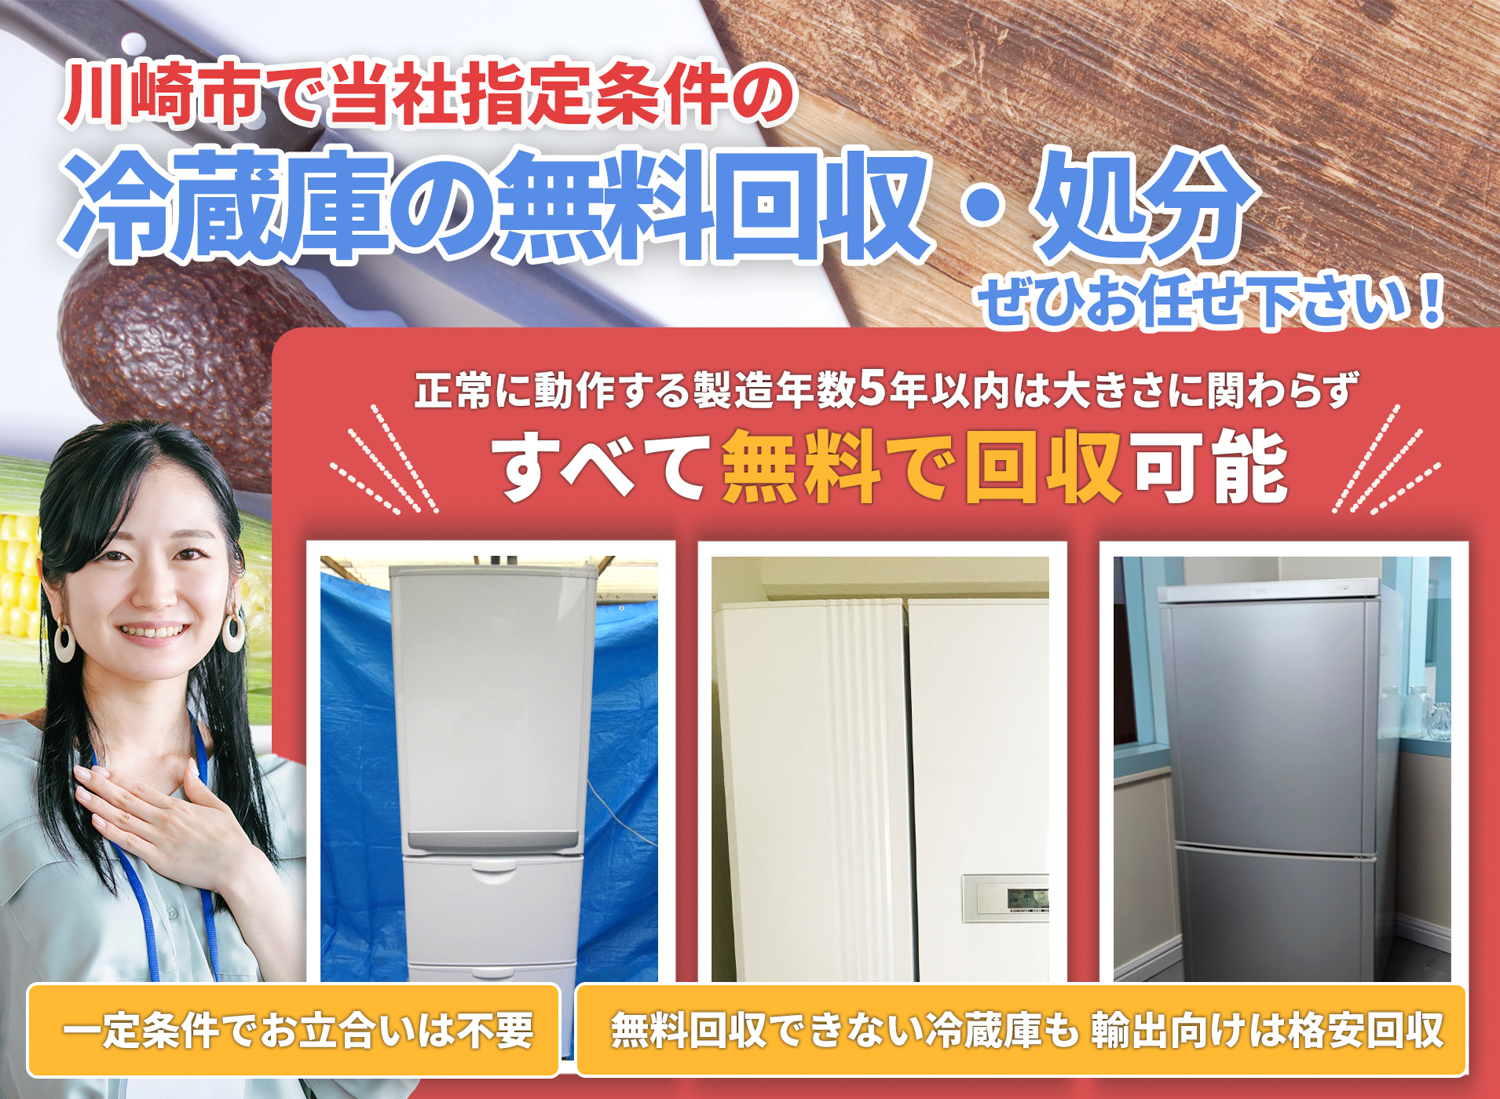 川崎市で「丁寧な作業」で安心を冷蔵庫無料回収処分隊の冷蔵庫無料回収サービス